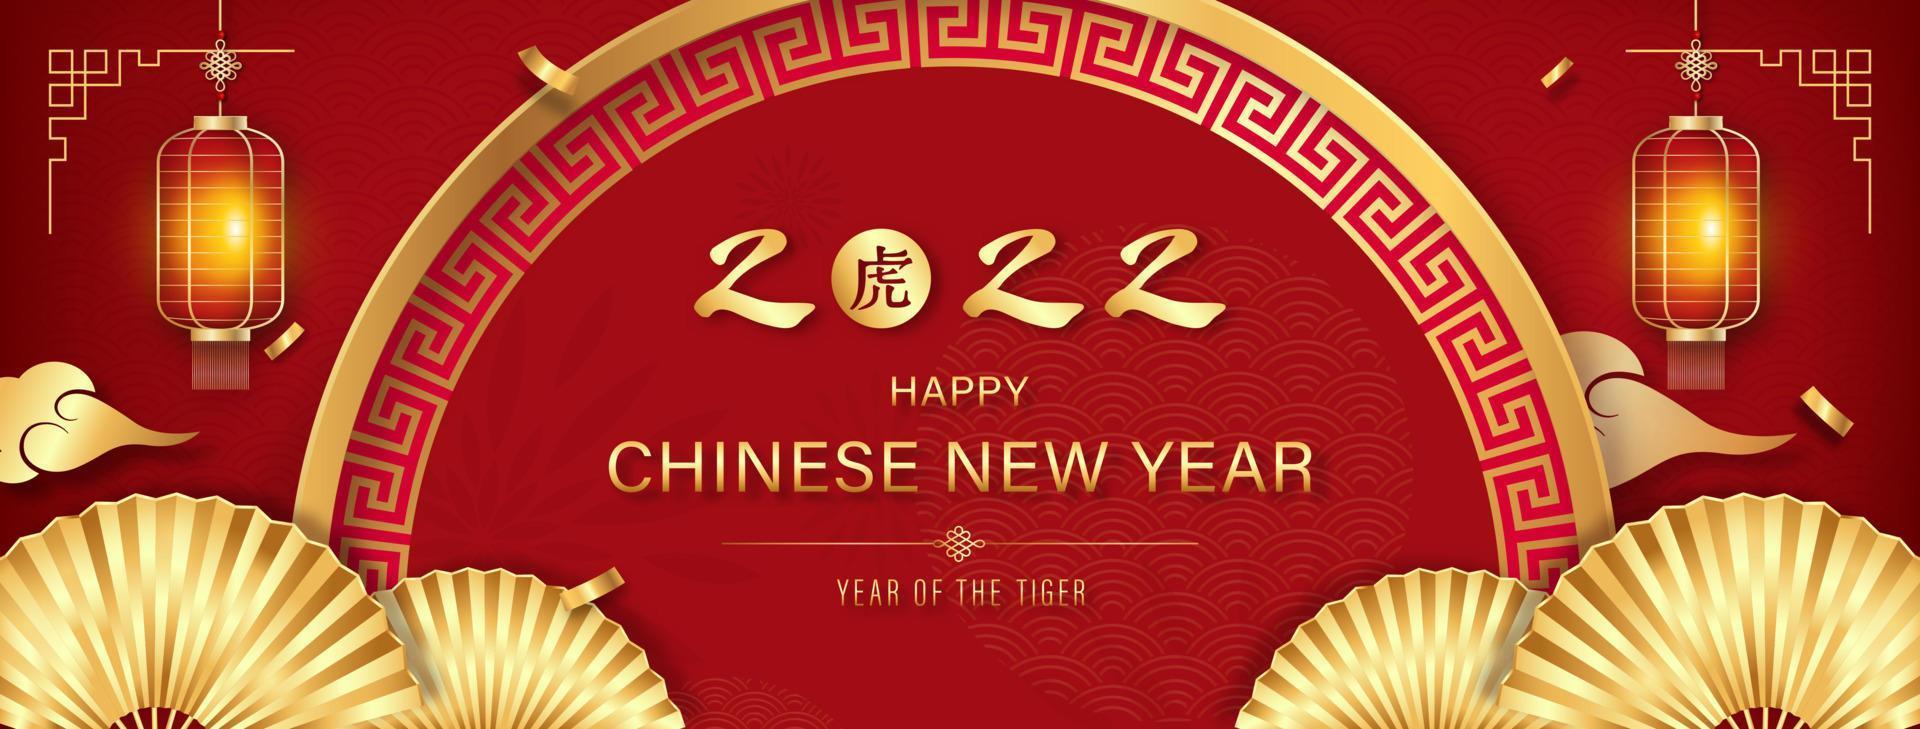 feliz ano novo chinês 2022, ano do tigre, fundo de banner com decoração de estilo oriental vermelho e dourado, tradução de texto estrangeiro como tigre vetor